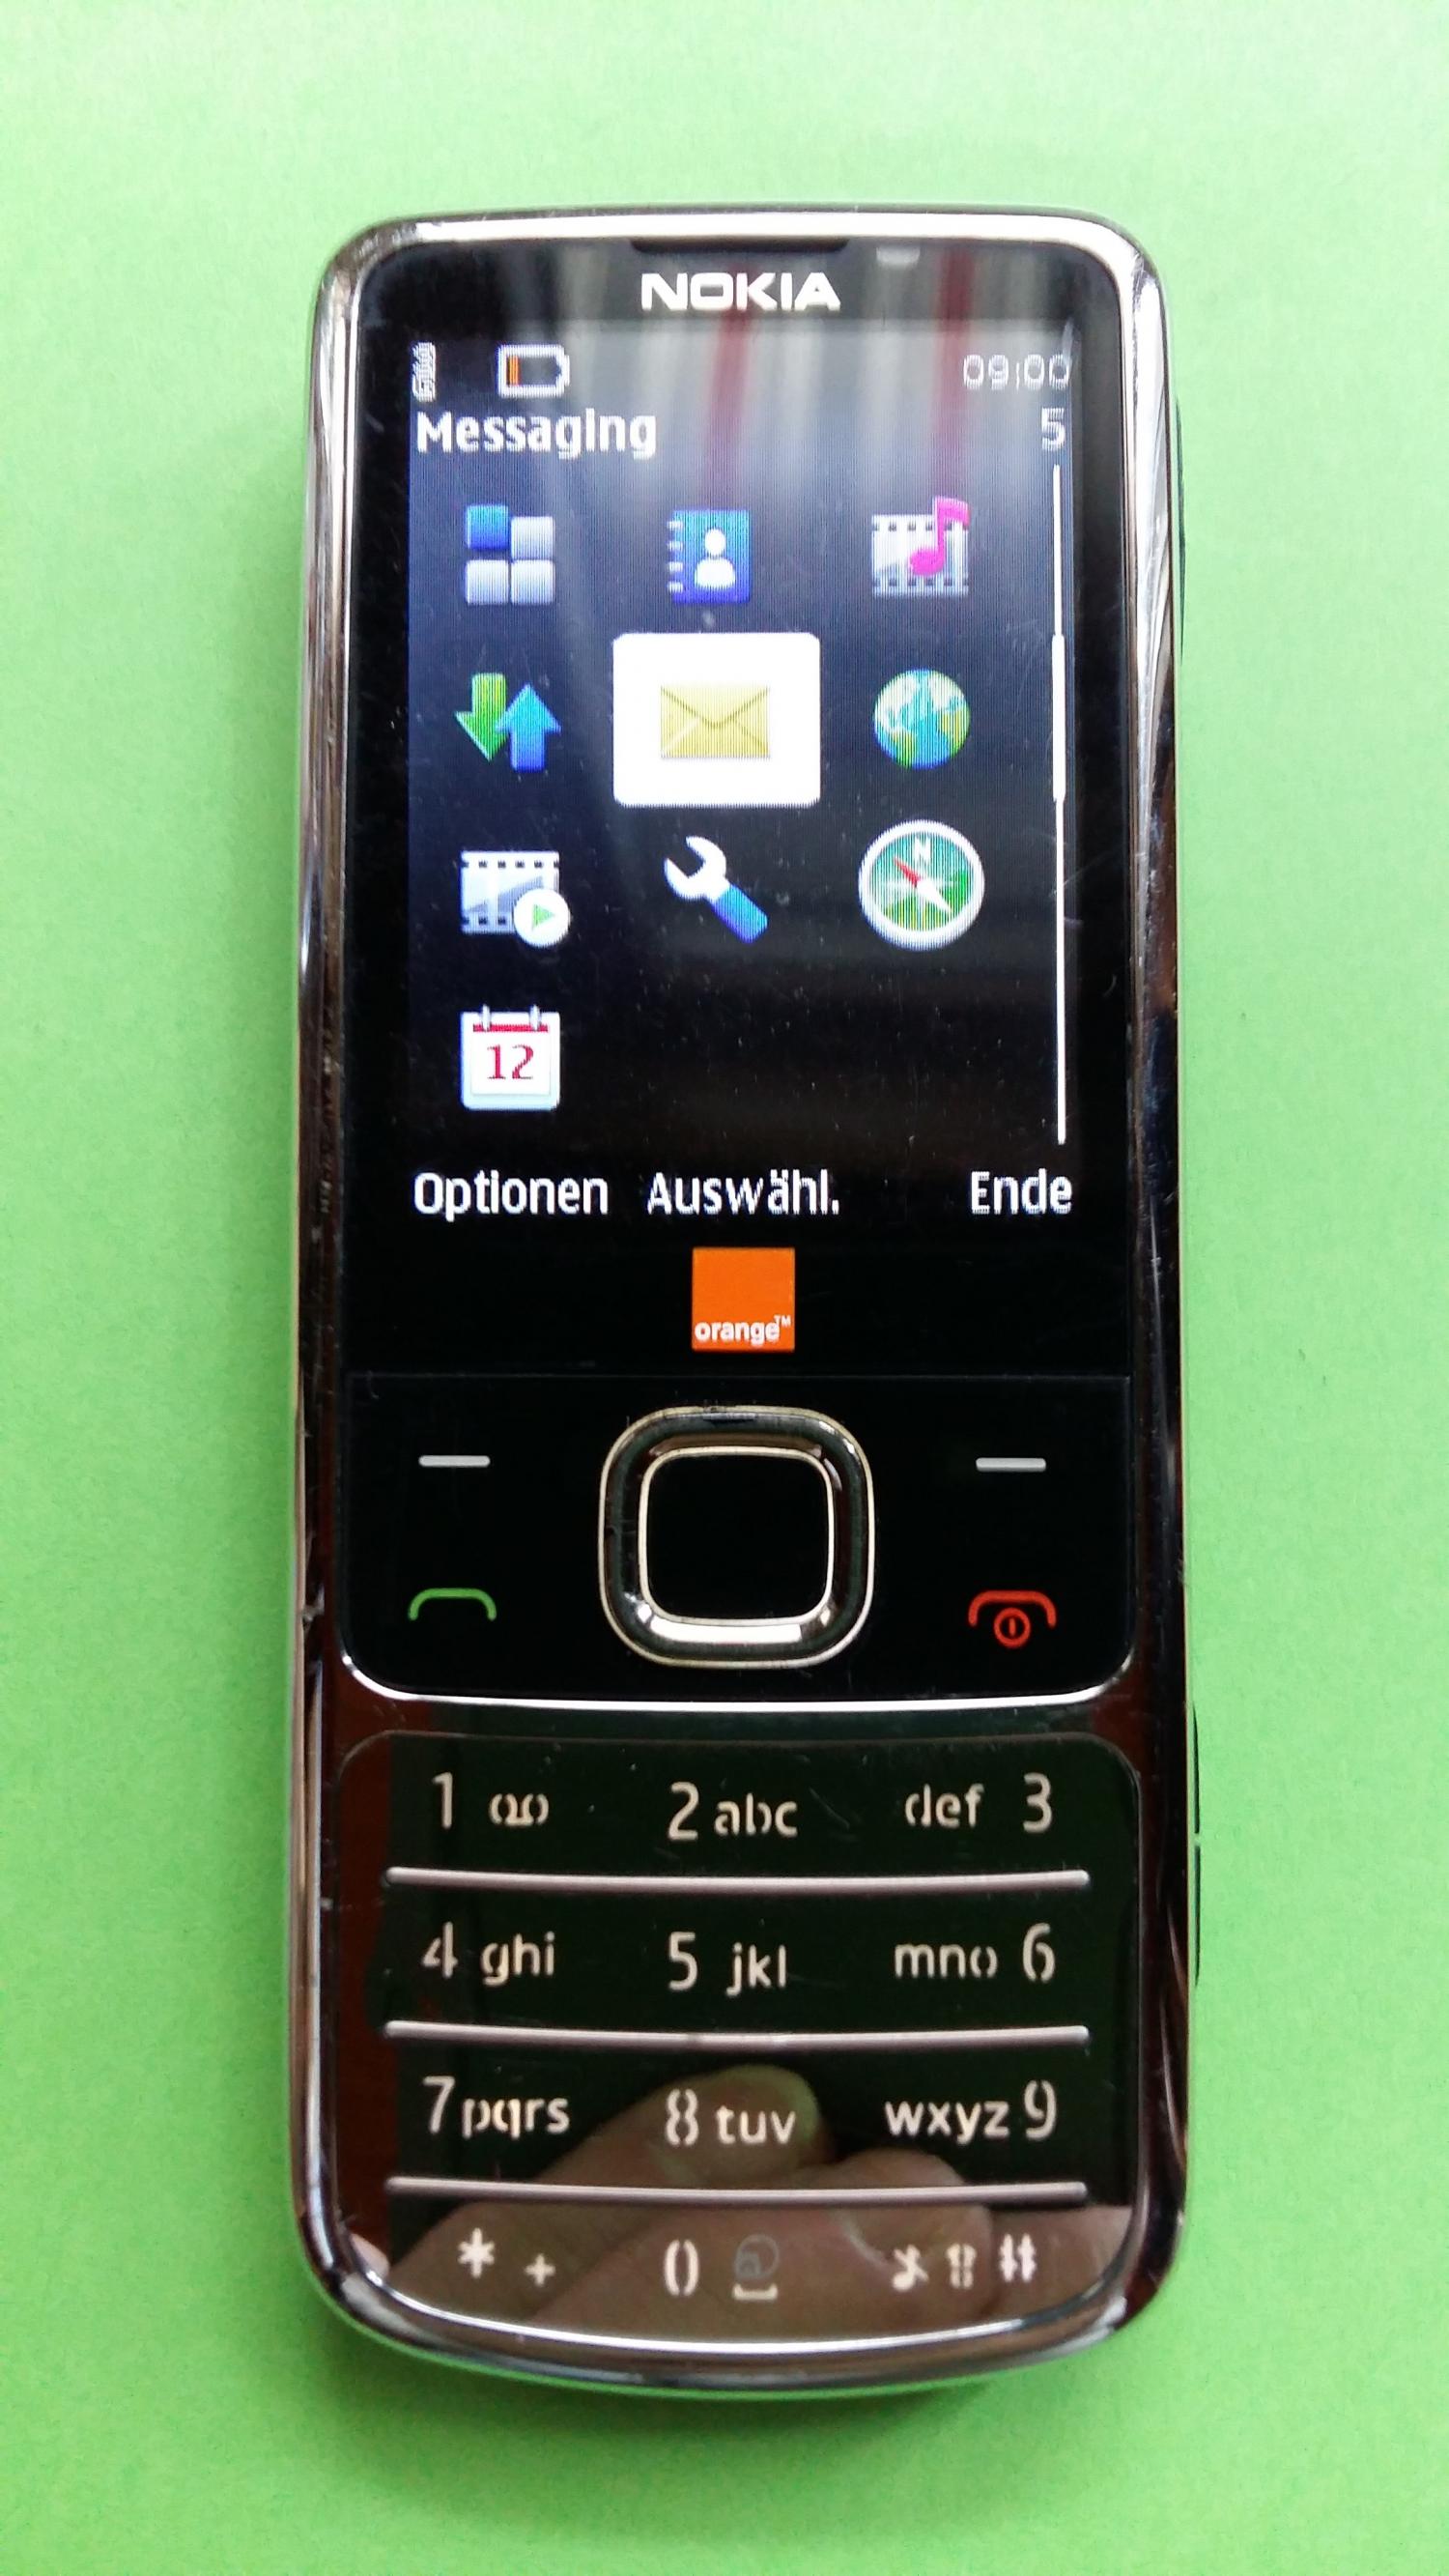 image-7337030-Nokia 6700C-1 (2)1.jpg